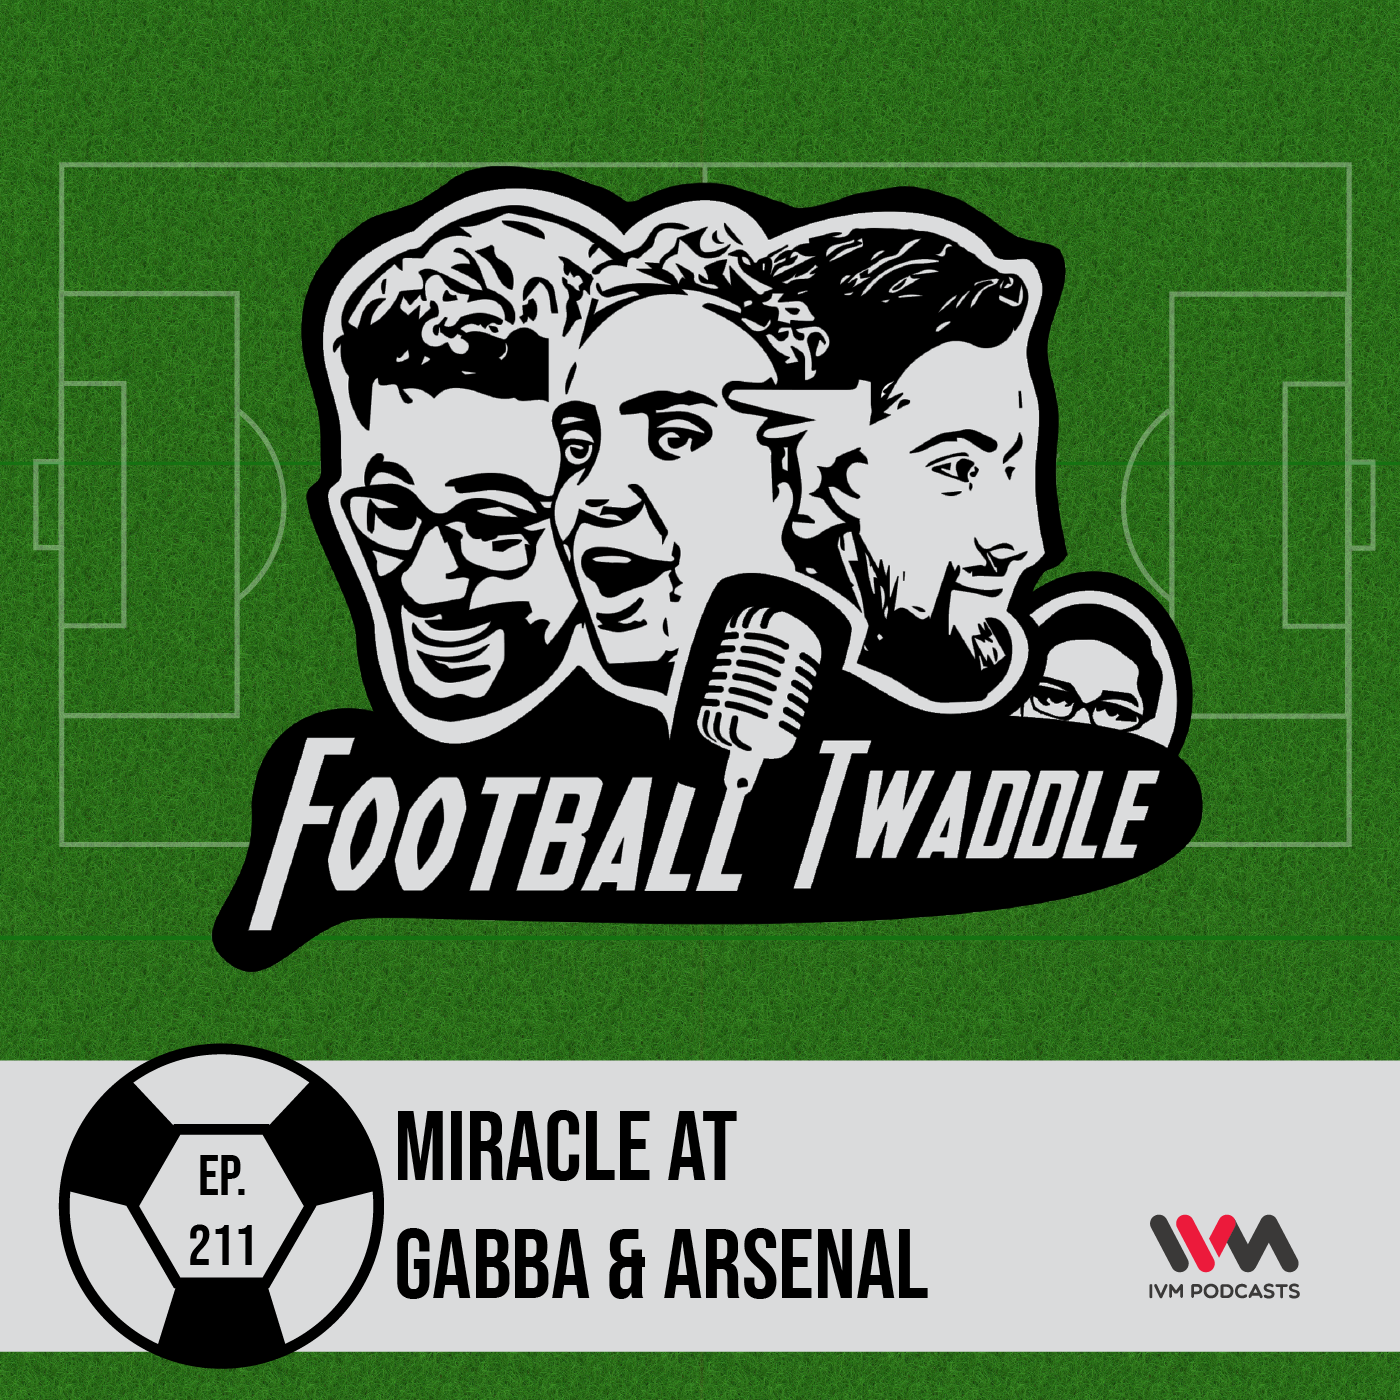 Miracle at Gabba & Arsenal